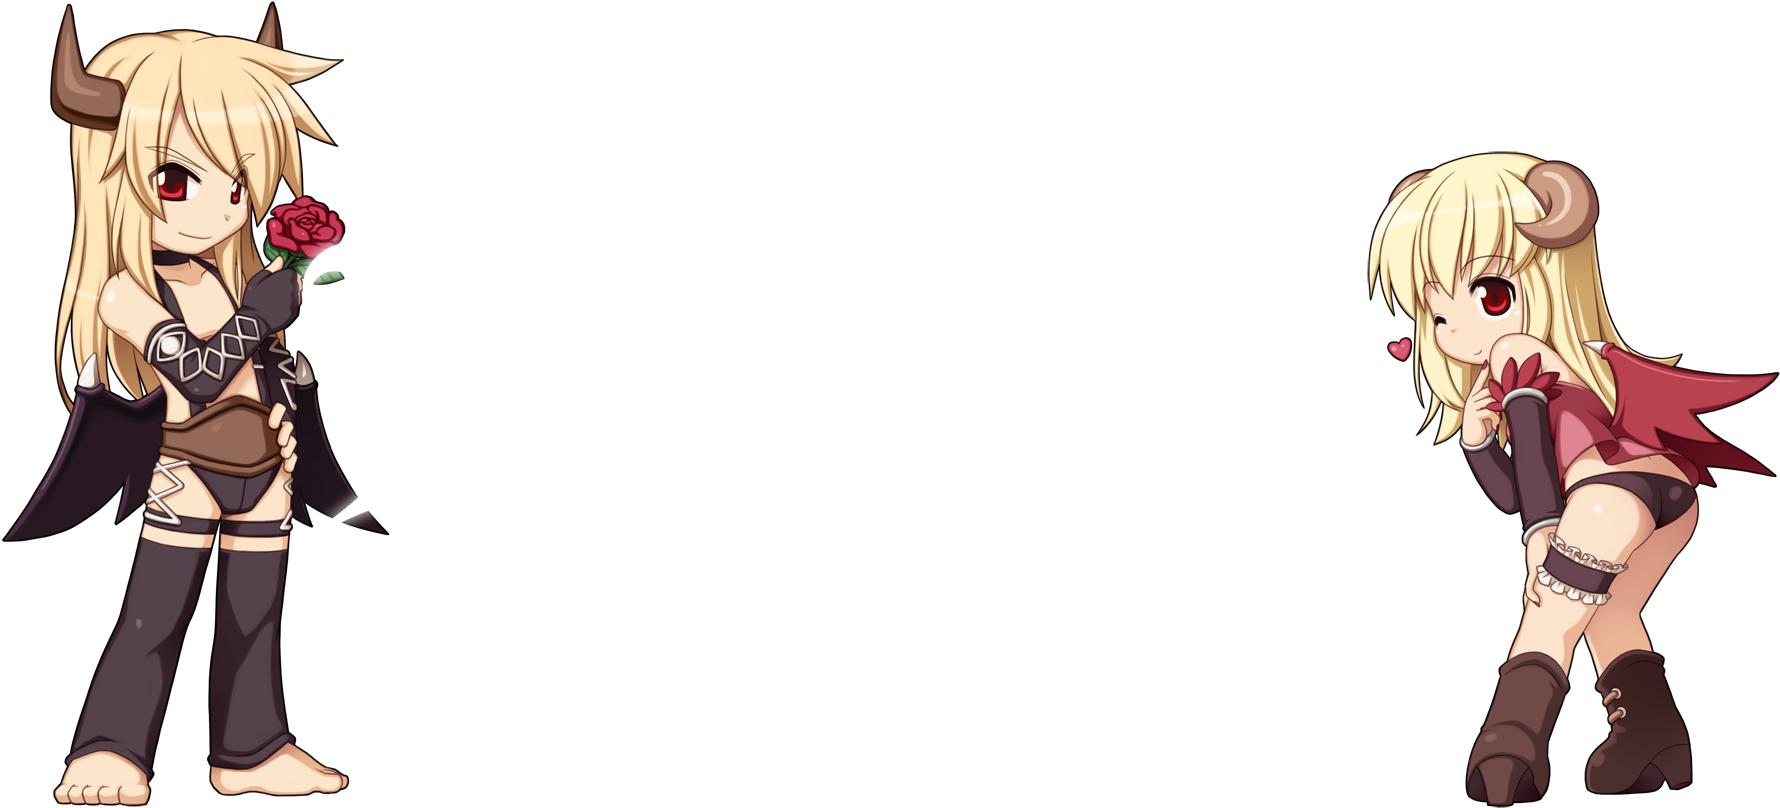 Lillithe Ragnarok Online - Ragnarok Poring Black And White Png (1800x830)